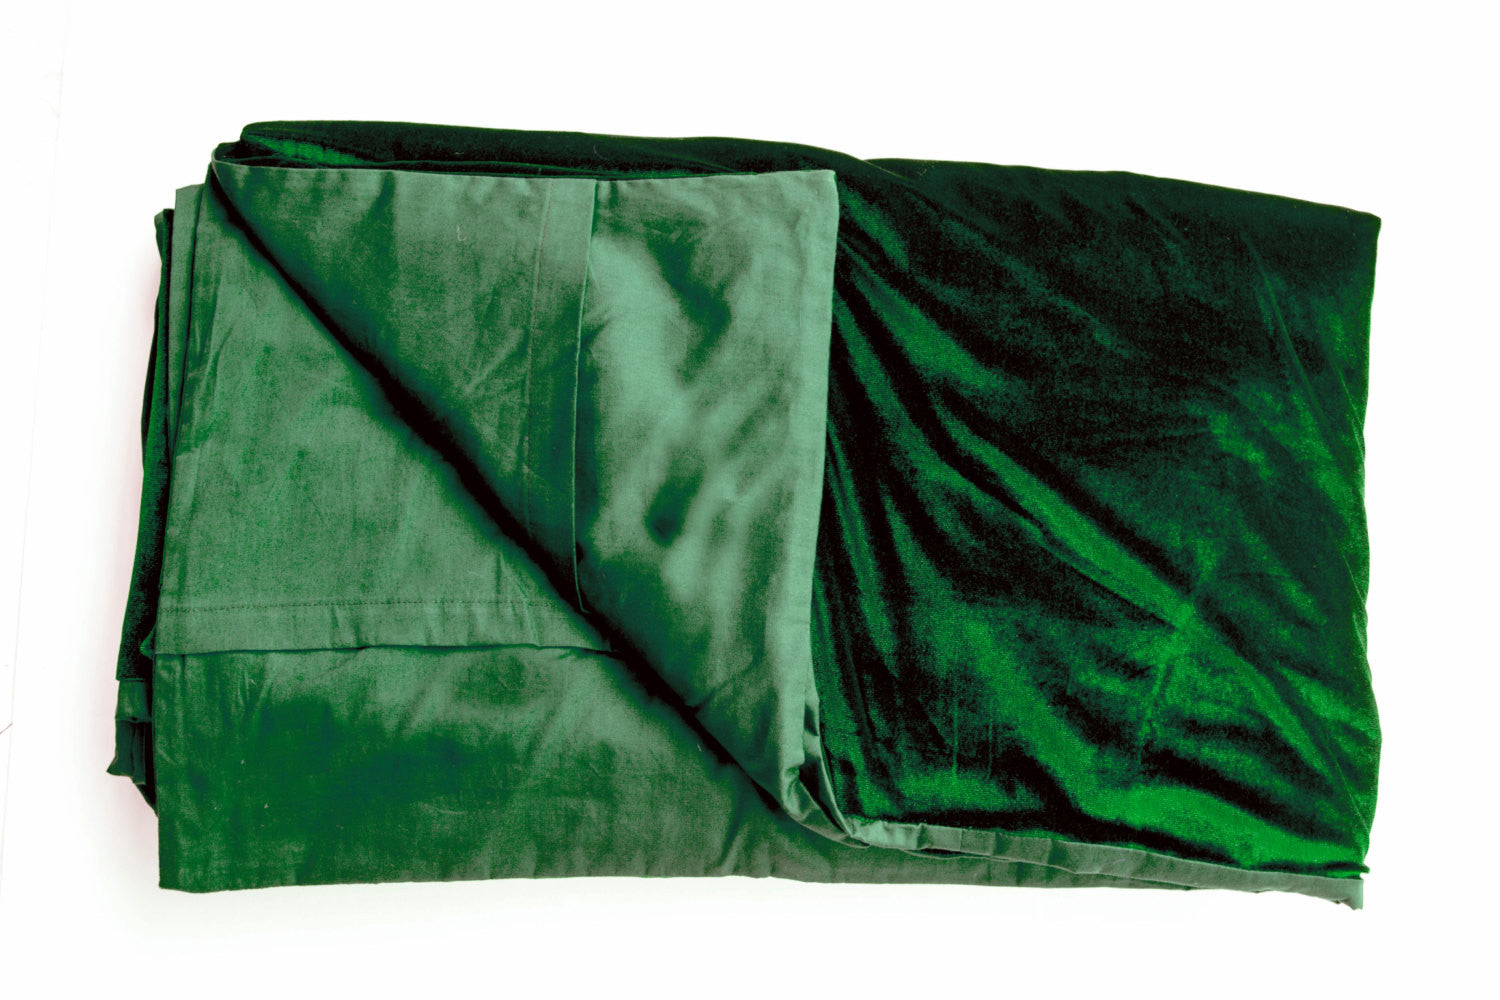 Luxury king size bedspreads in green